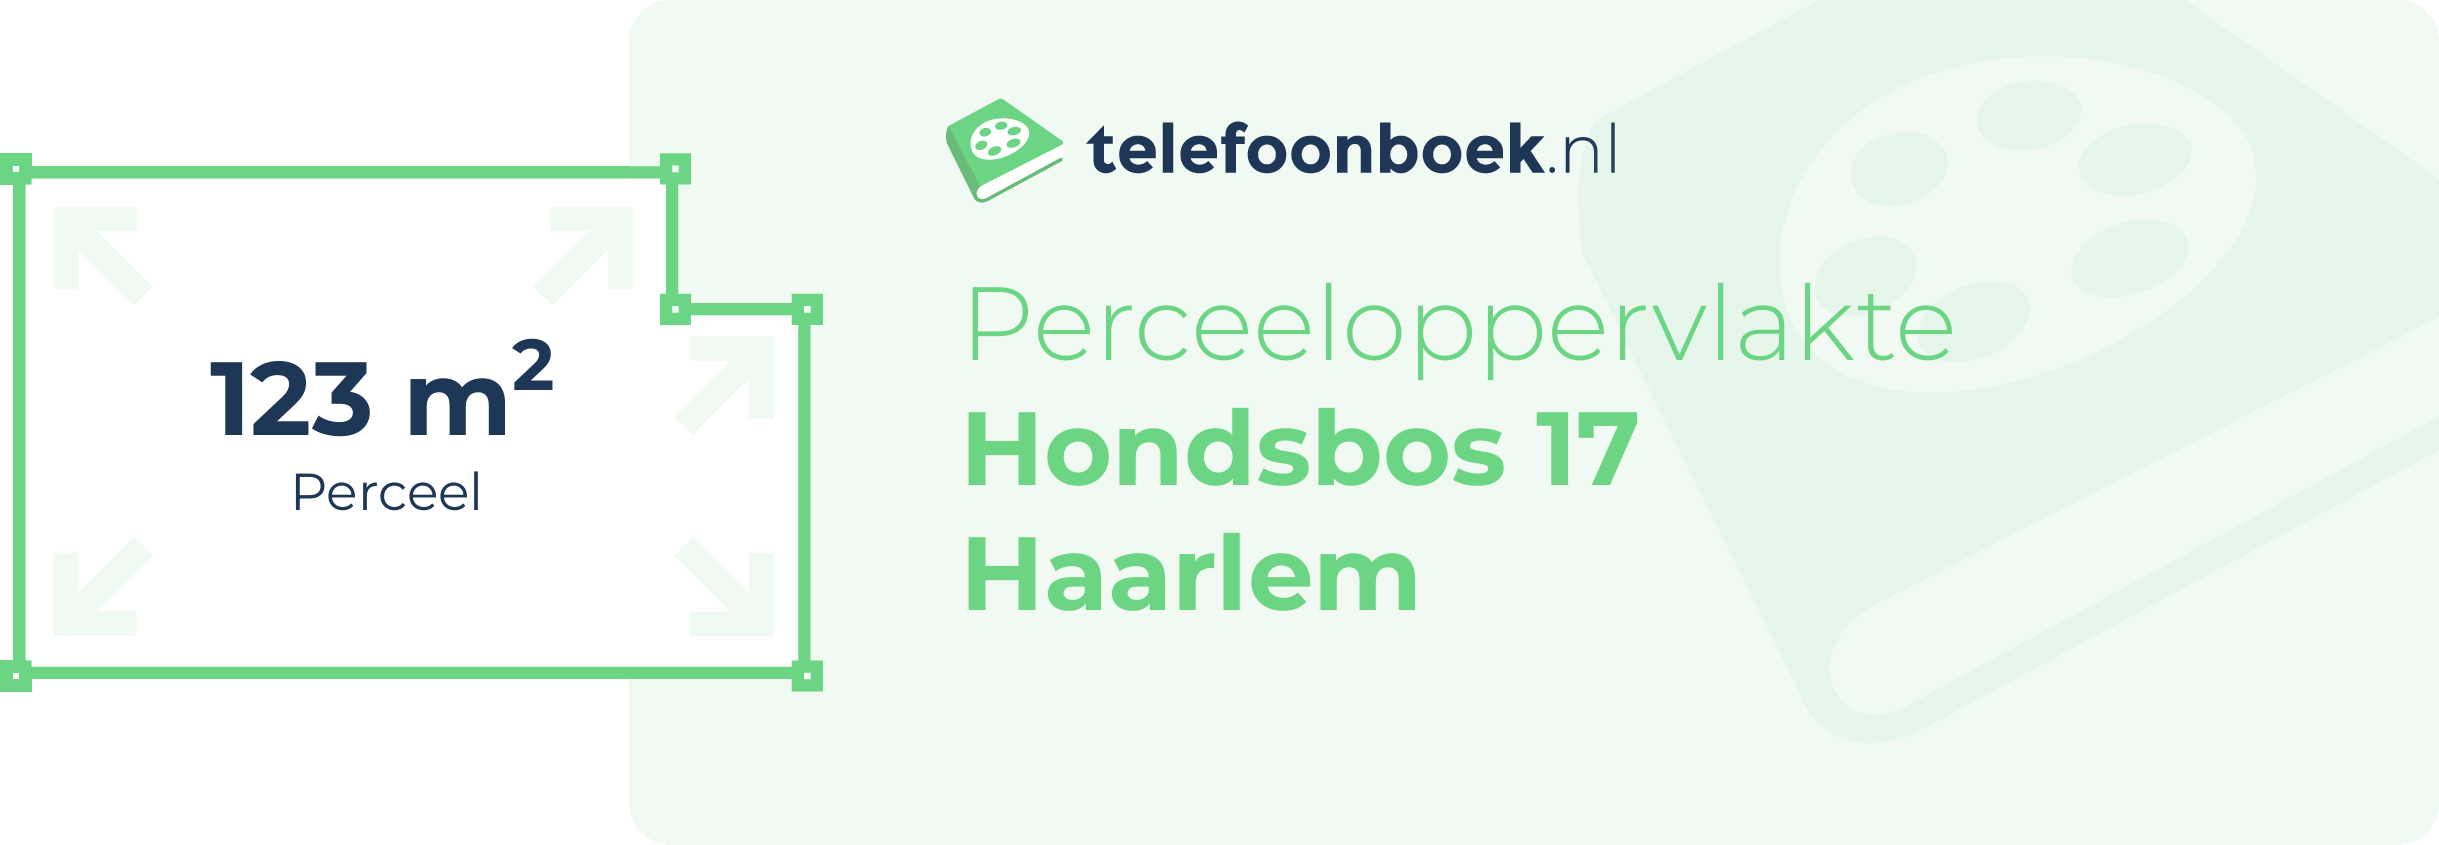 Perceeloppervlakte Hondsbos 17 Haarlem